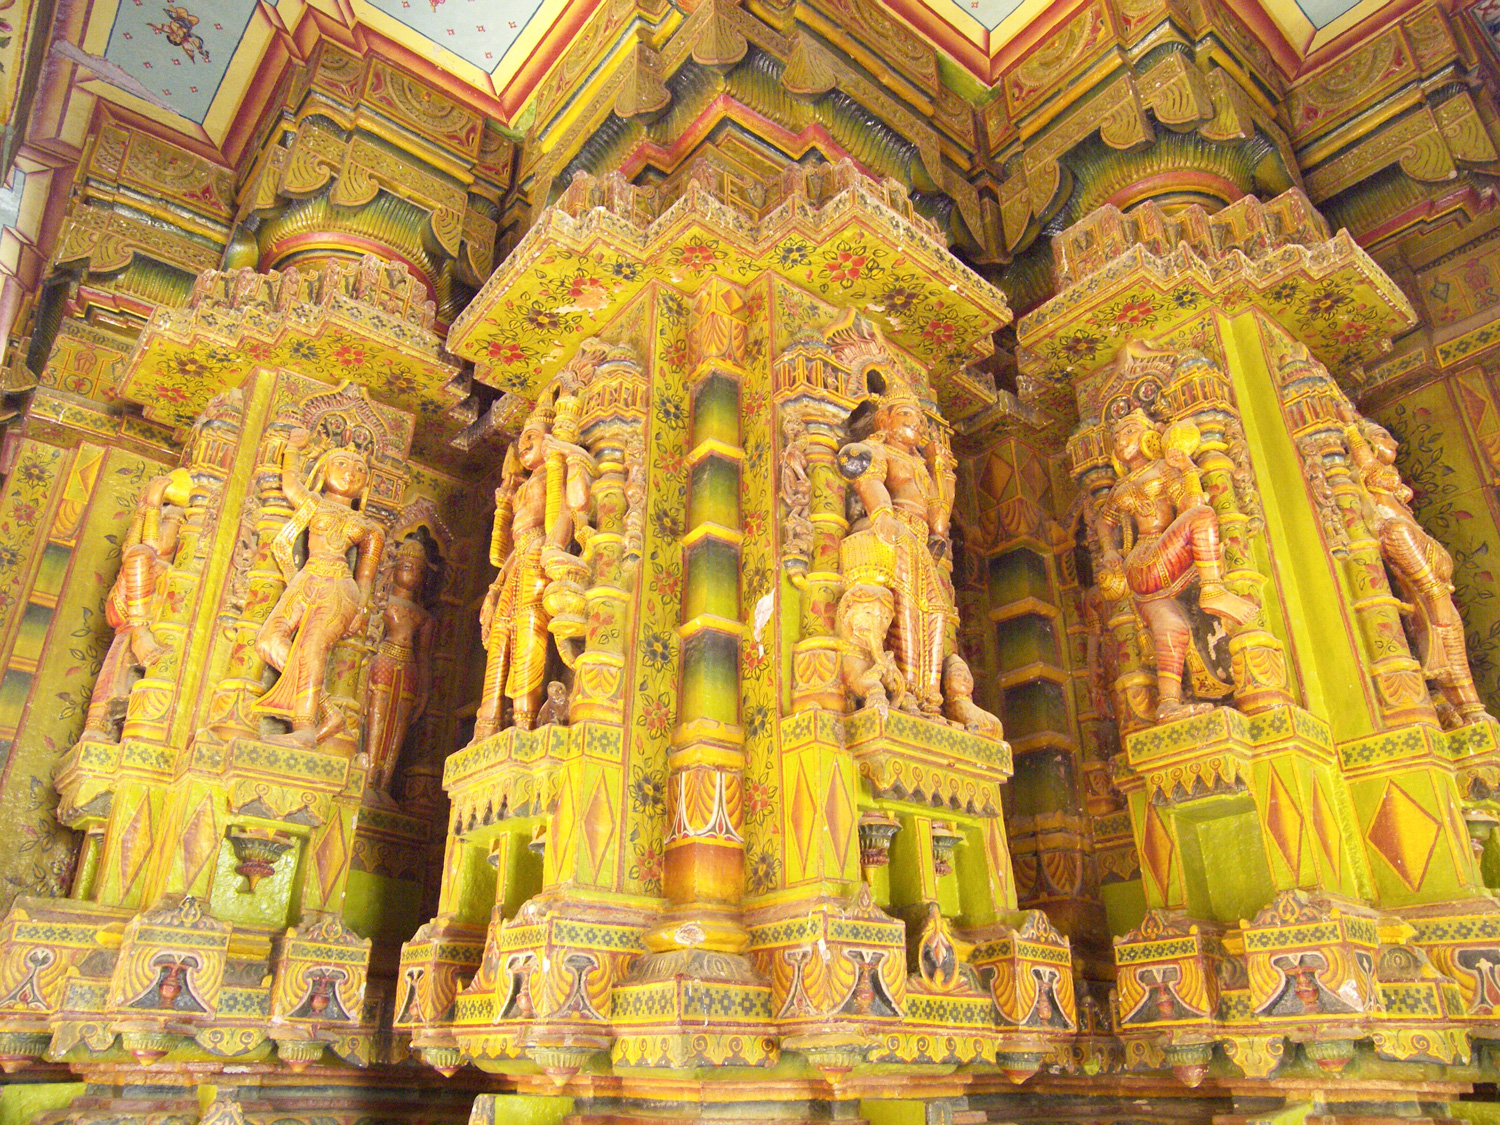 Interiors of Bandeshwar Temple in Bikaner